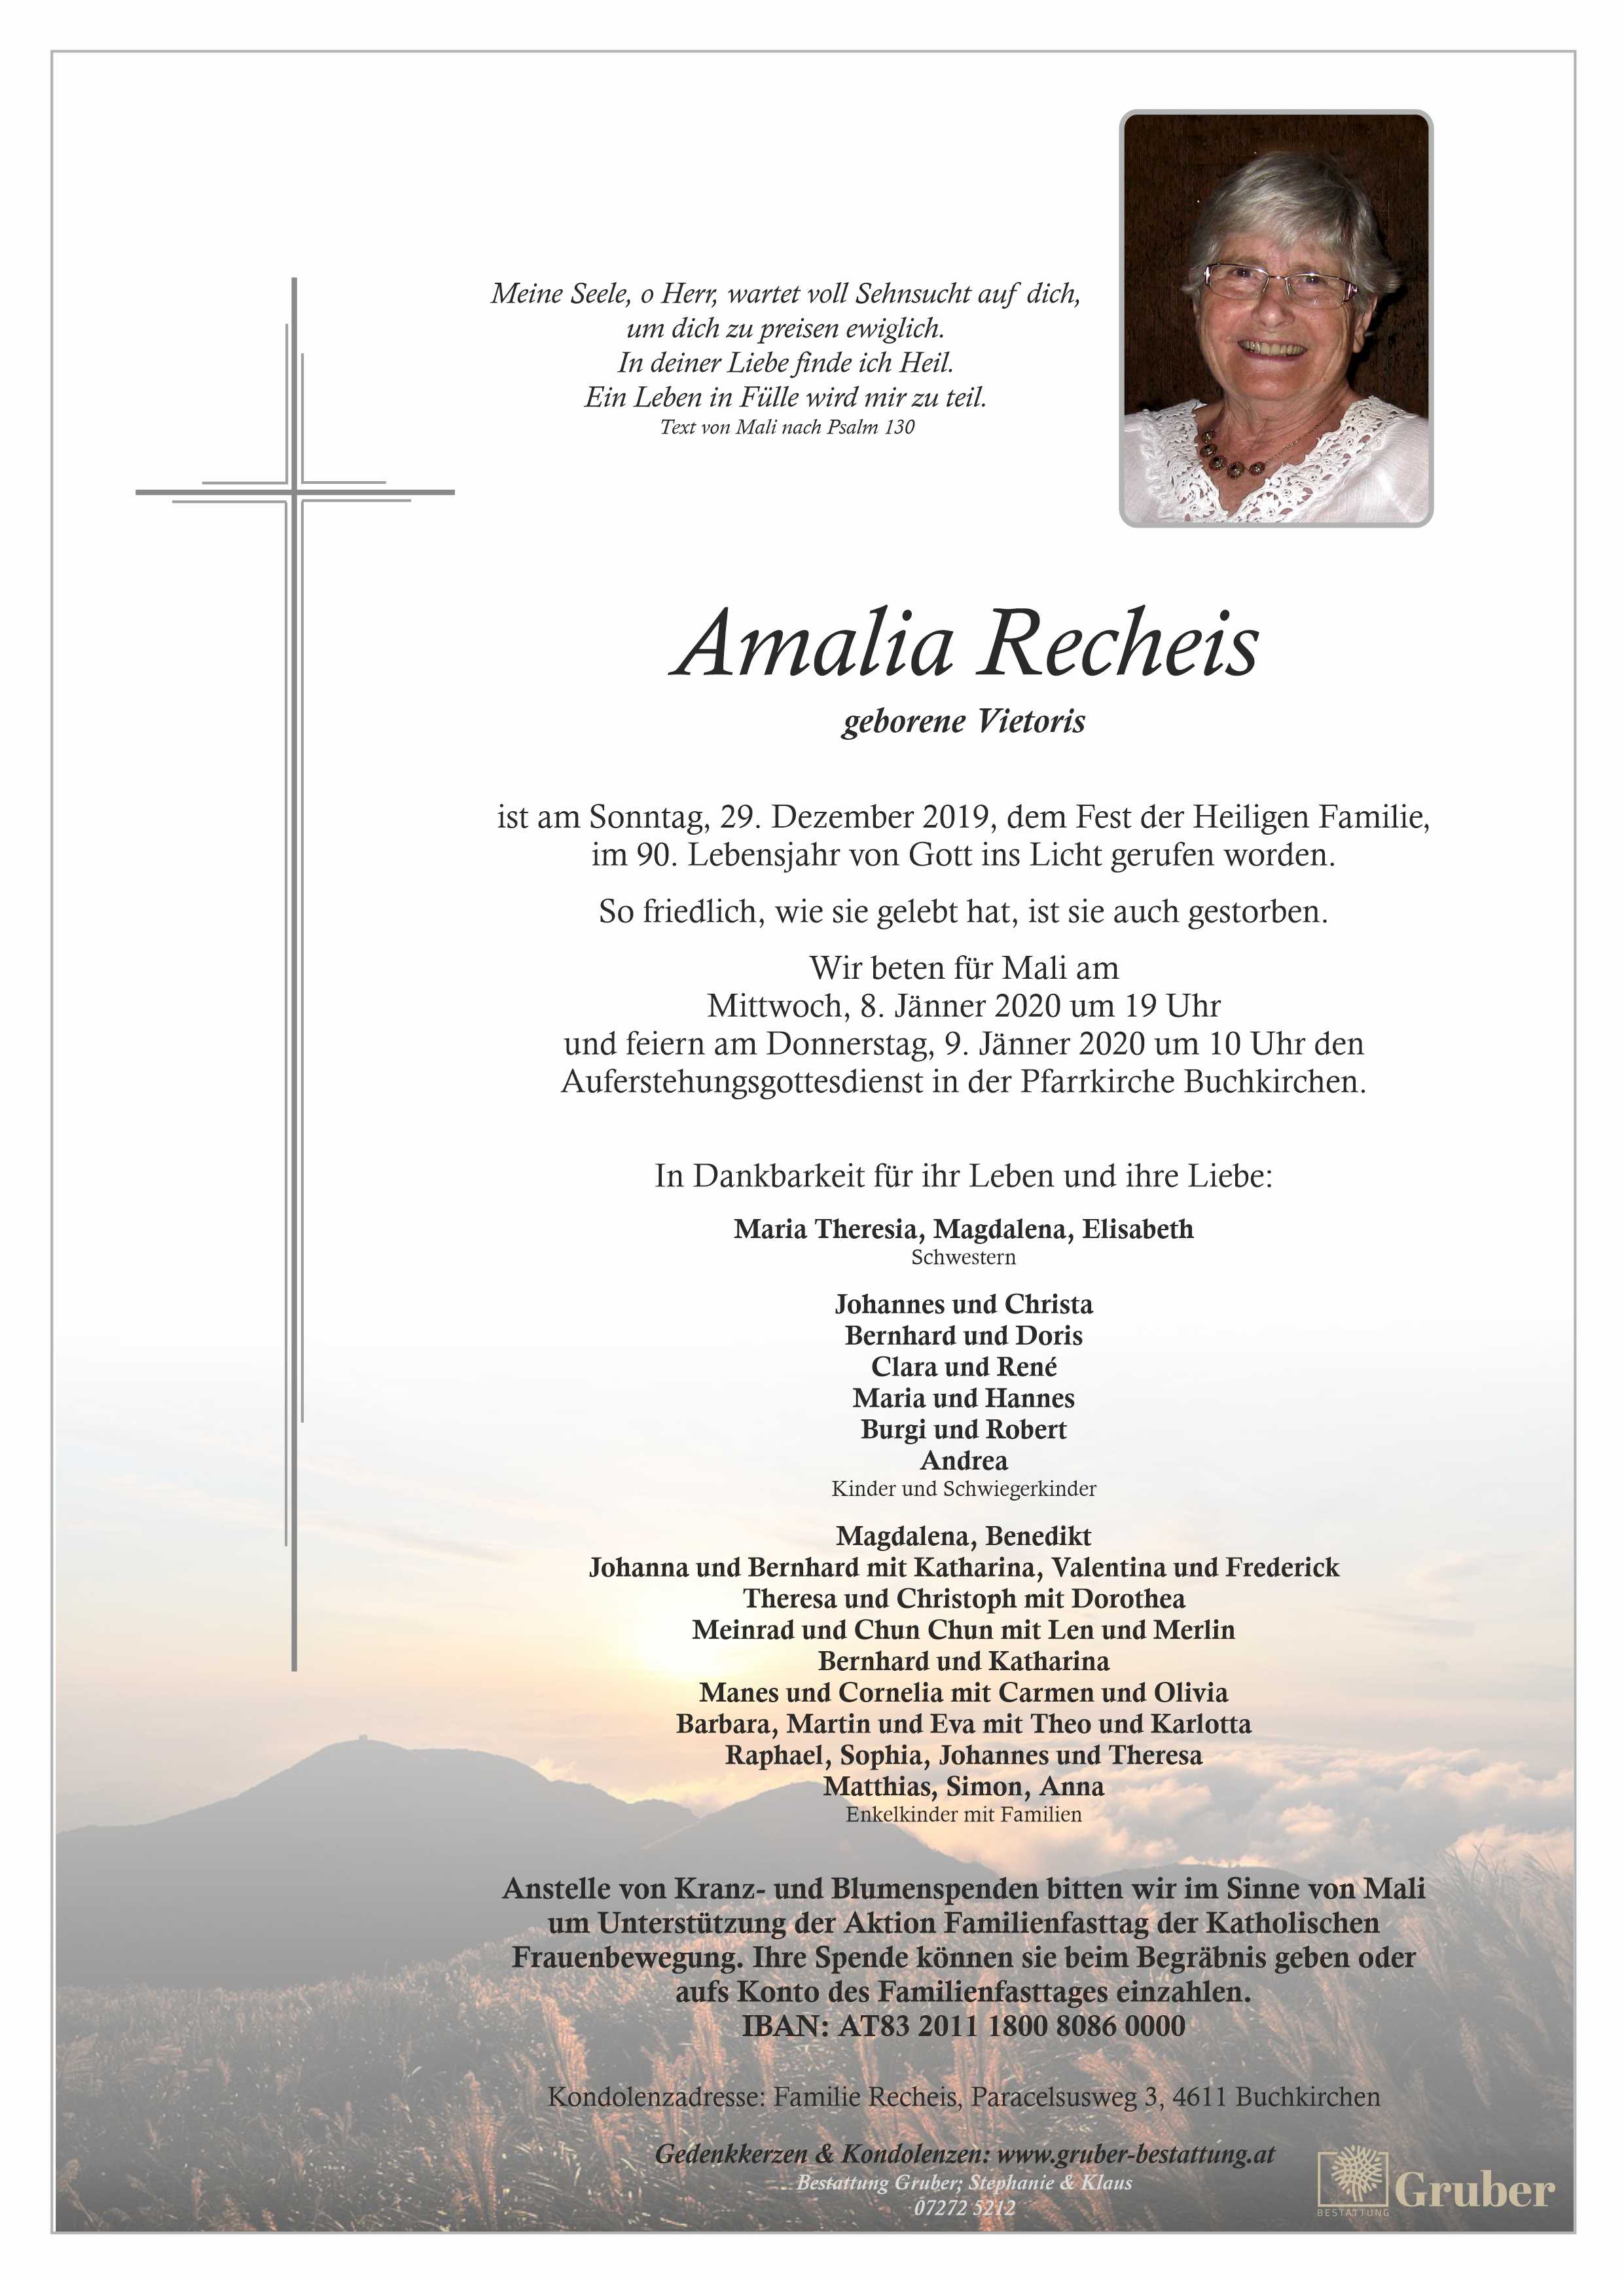 Amalia Recheis (Buchkirchen)